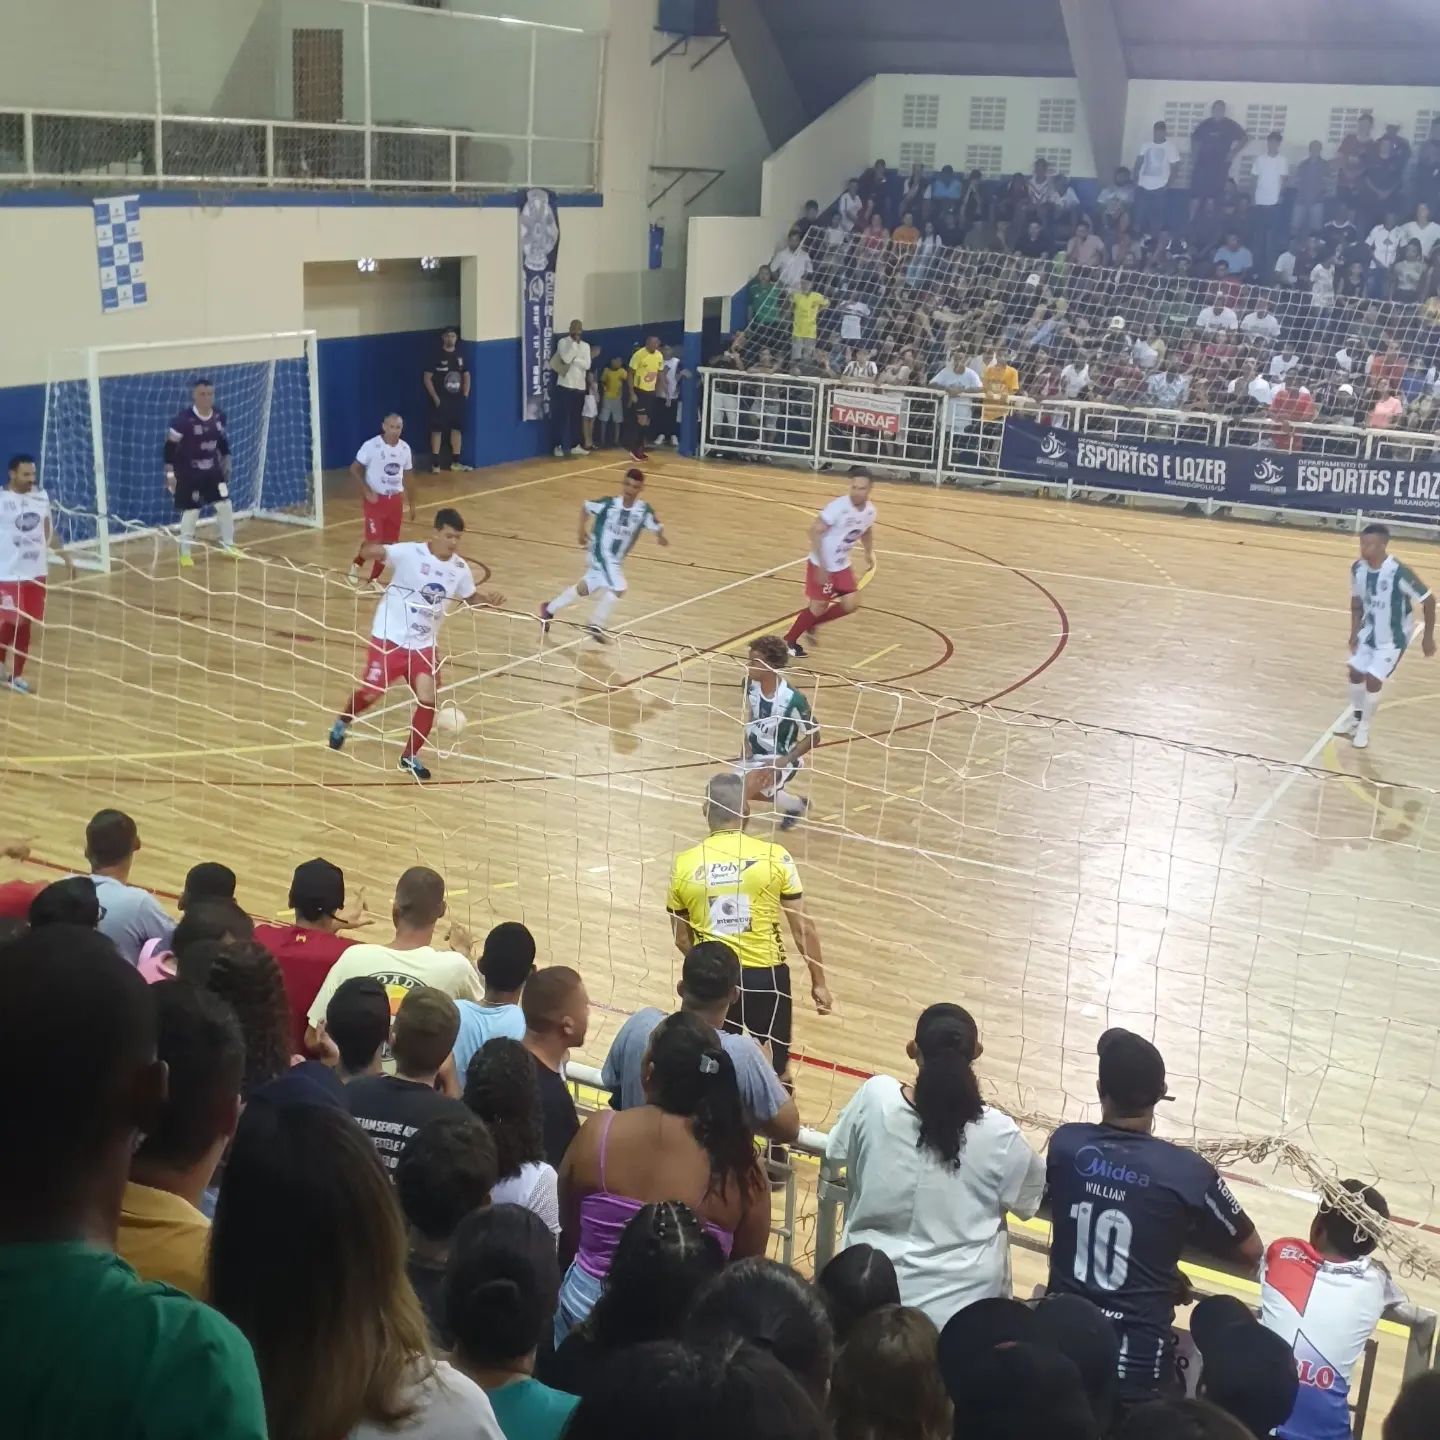 Com 10 equipes inscritas, Campeonato Comercial de Futsal começa nesta terça-feira (16)